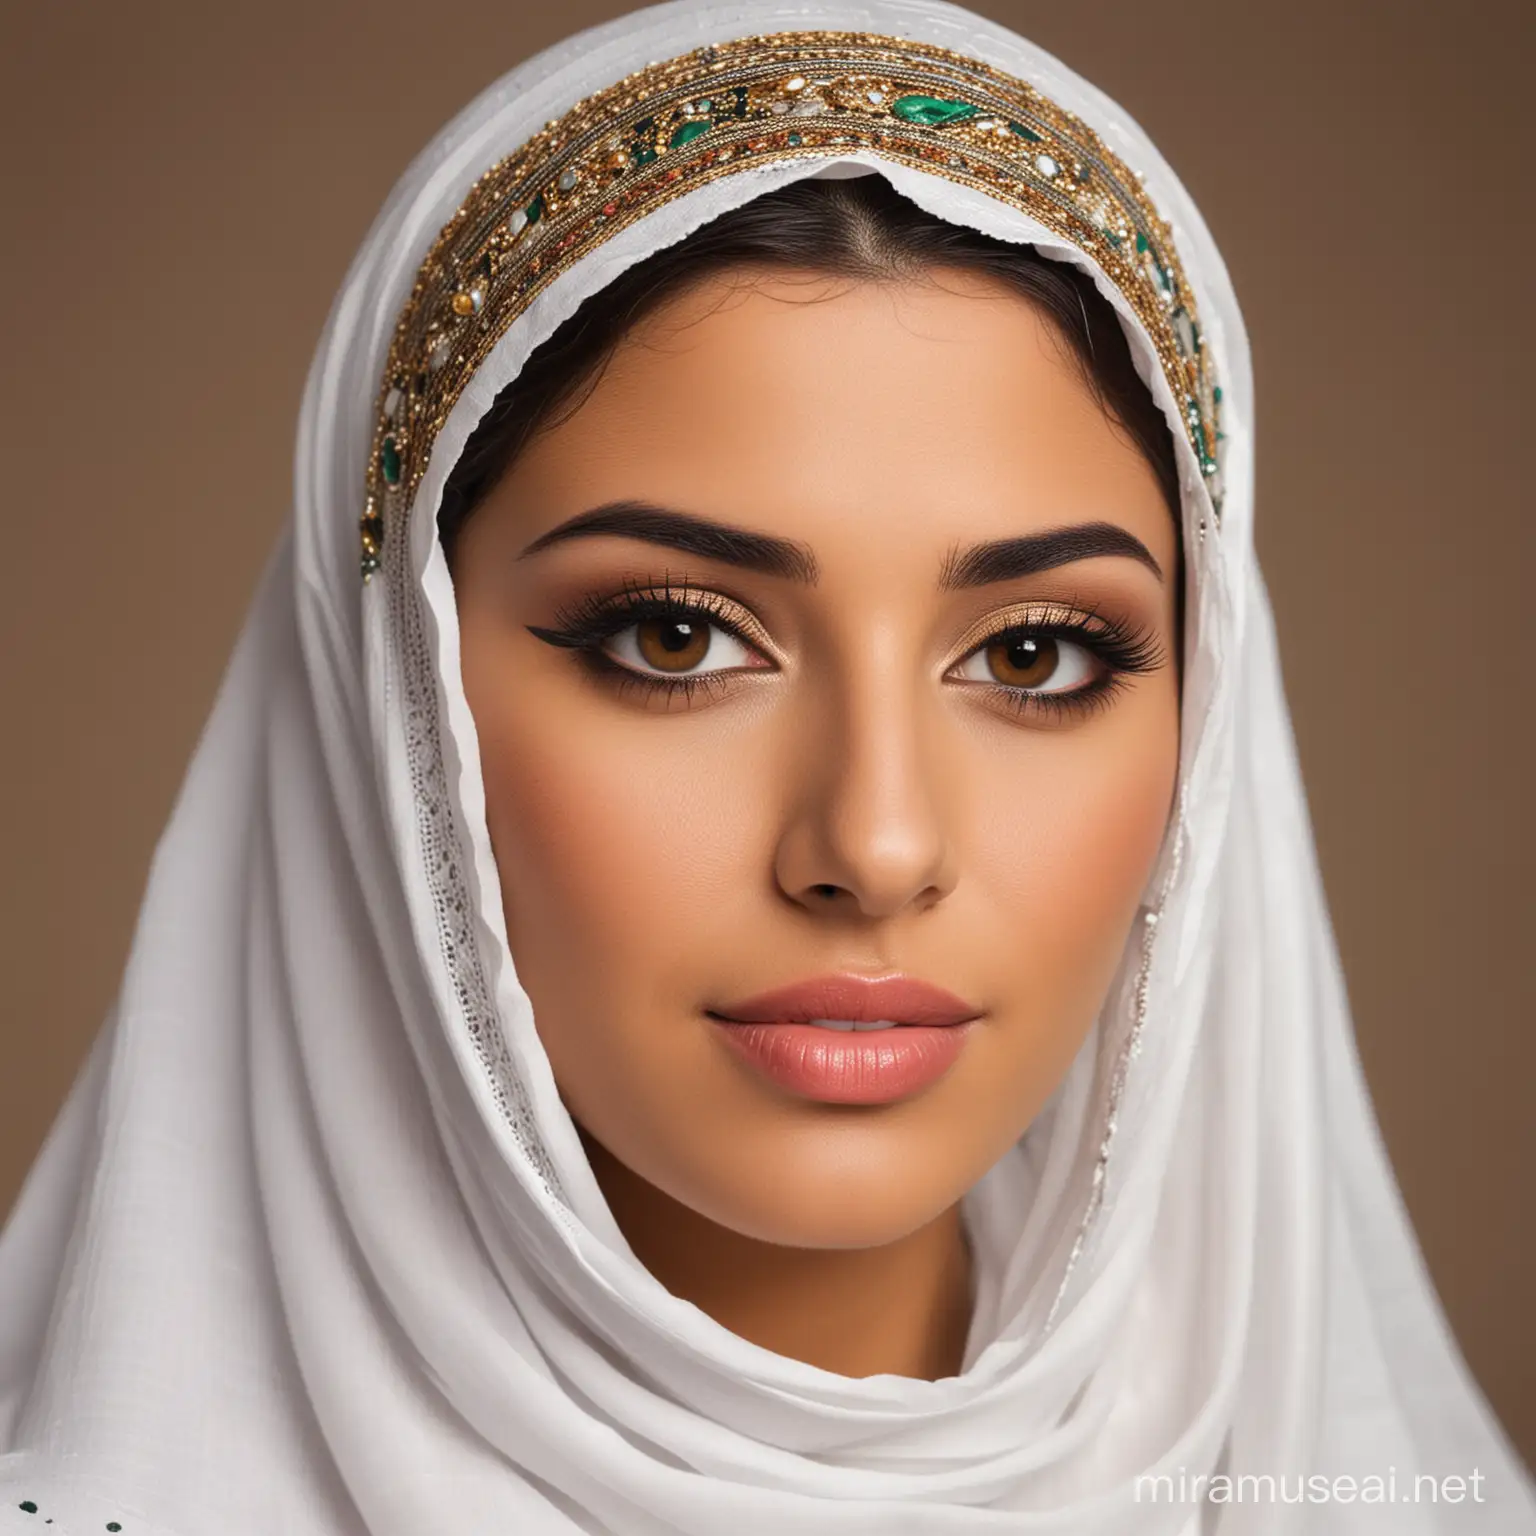 Beautiful Arab woman